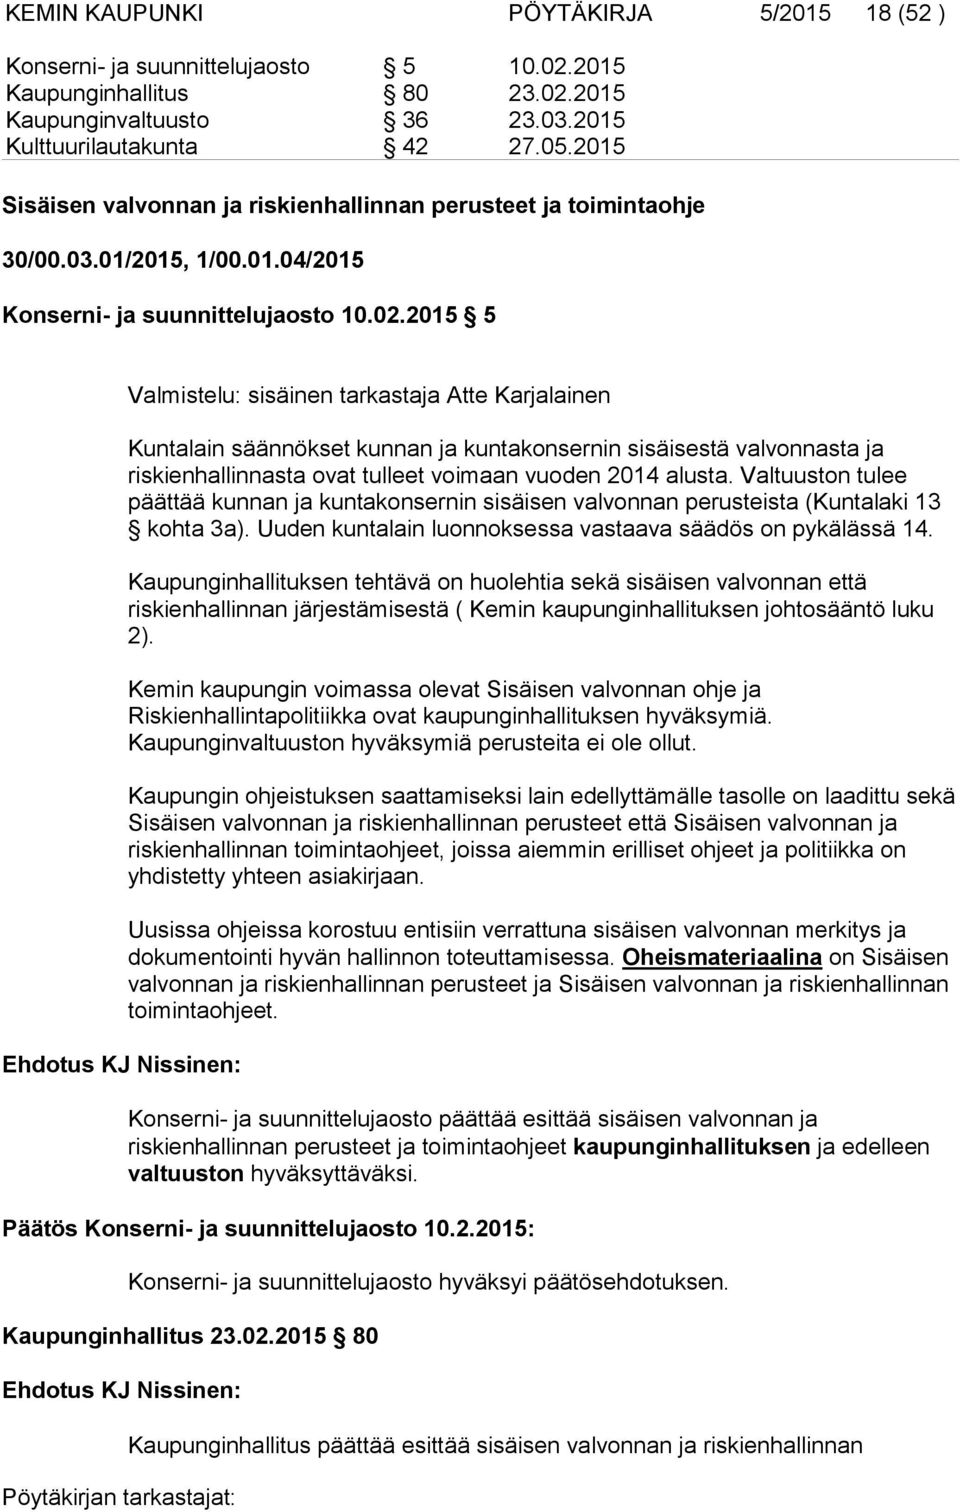 2015 5 Ehdotus KJ Nissinen: Valmistelu: sisäinen tarkastaja Atte Karjalainen Kuntalain säännökset kunnan ja kuntakonsernin sisäisestä valvonnasta ja riskienhallinnasta ovat tulleet voimaan vuoden